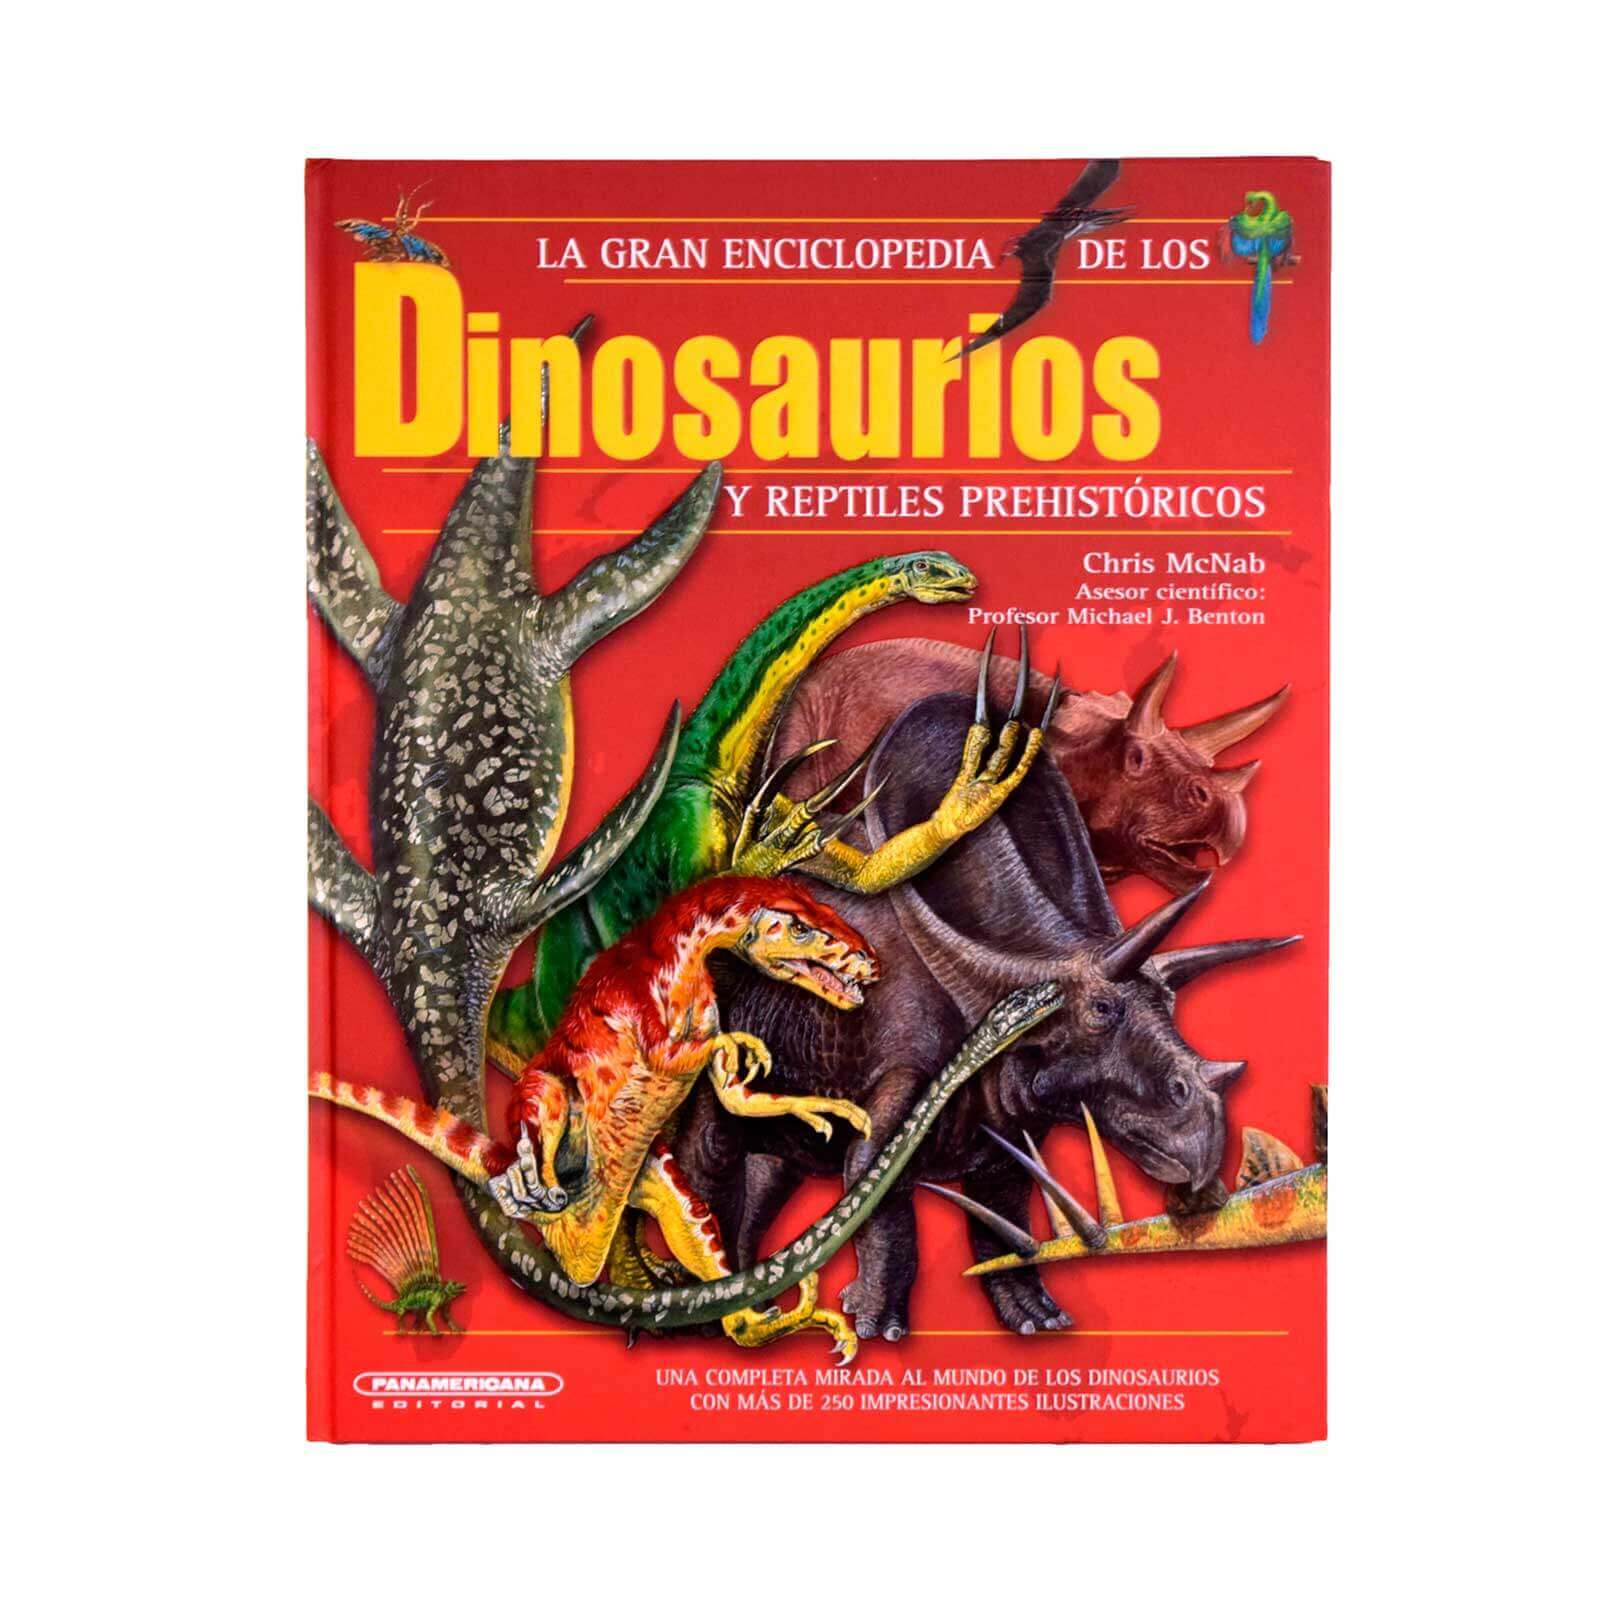 La gran enciclopedia de los dinosaurios y reptiles prehistóricos